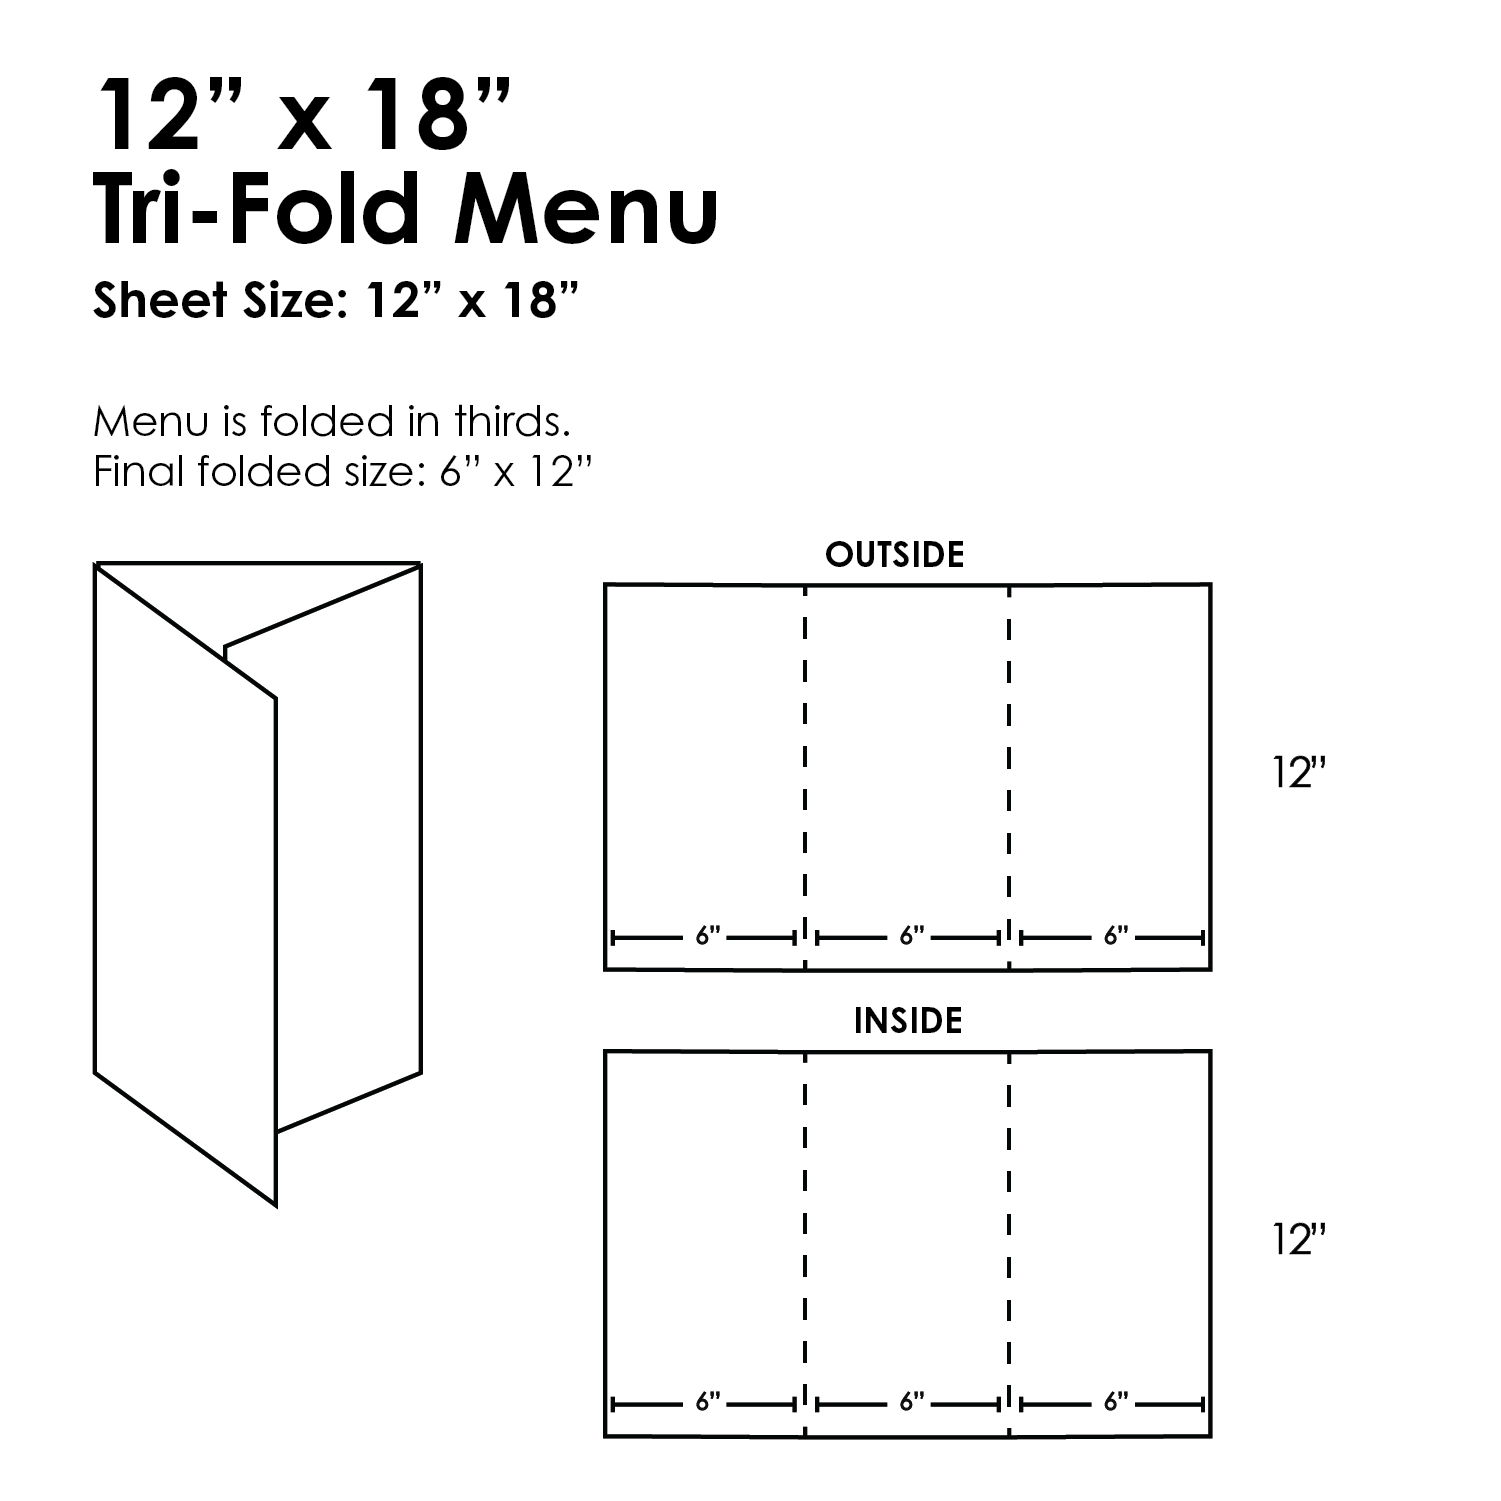 12" x 18" Tri-Fold Waterproof Menus